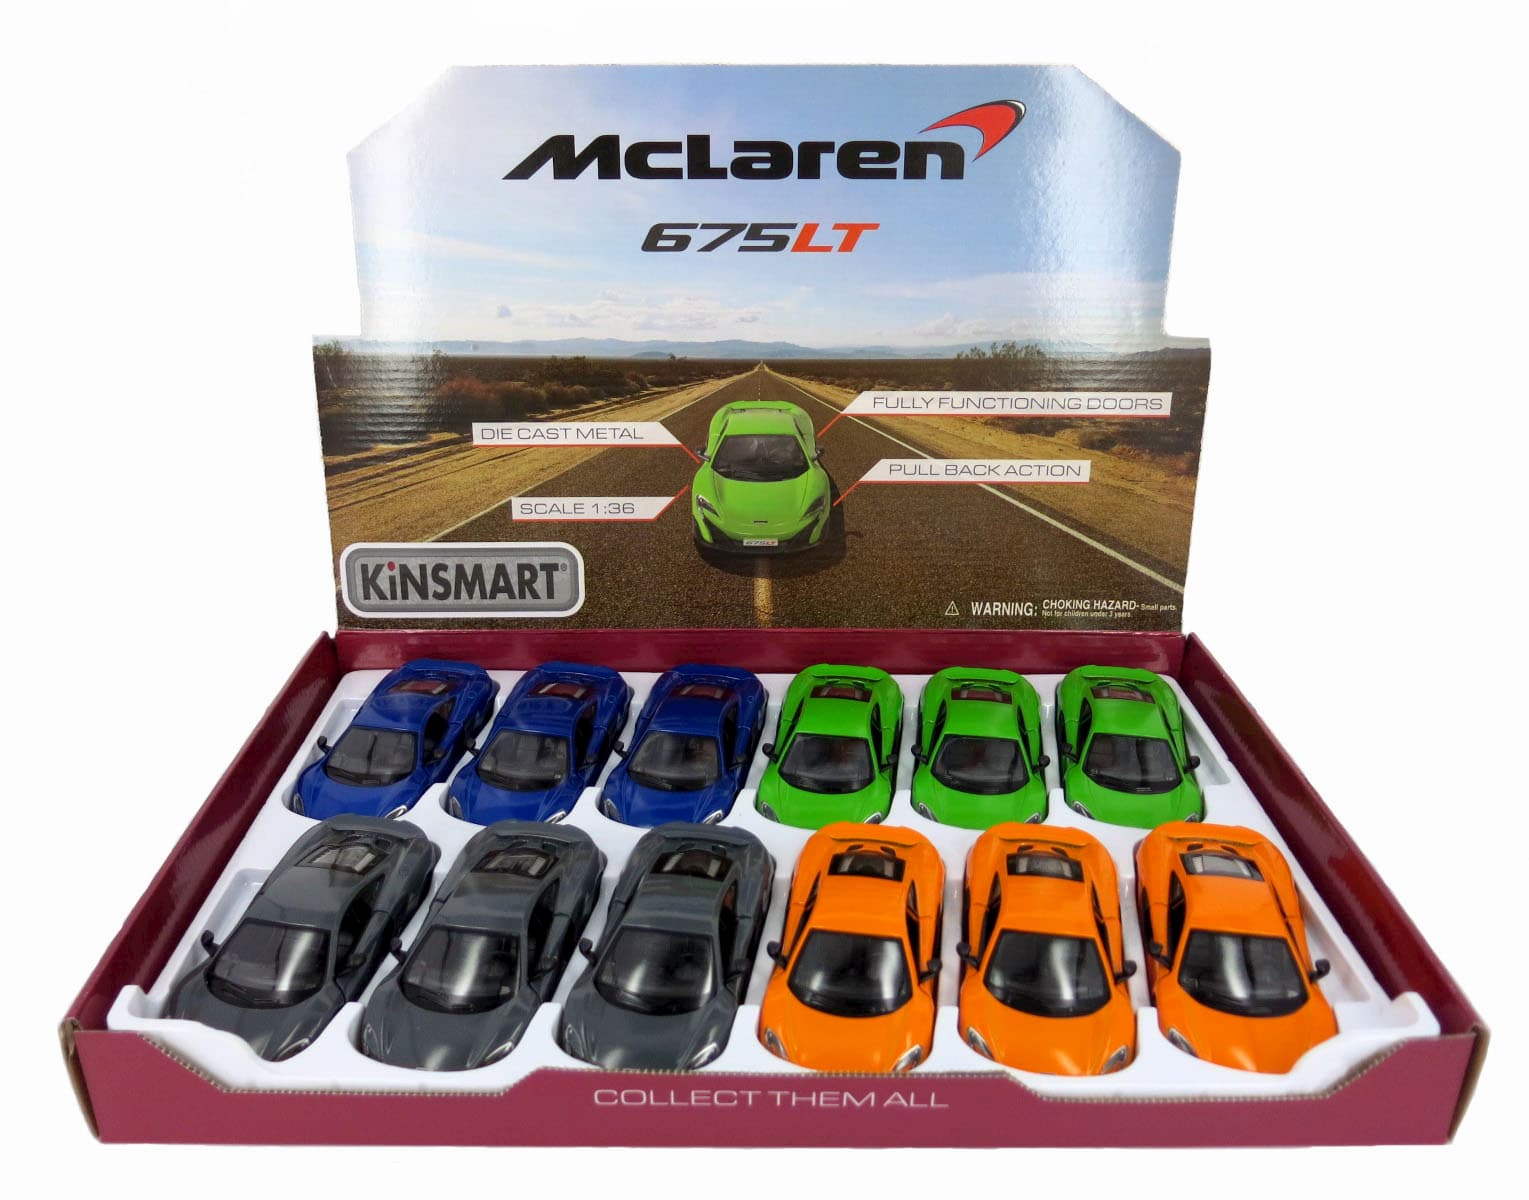 Машинка металлическая Kinsmart 1:36 «McLaren 675LT» KT5392D инерционная / Синий